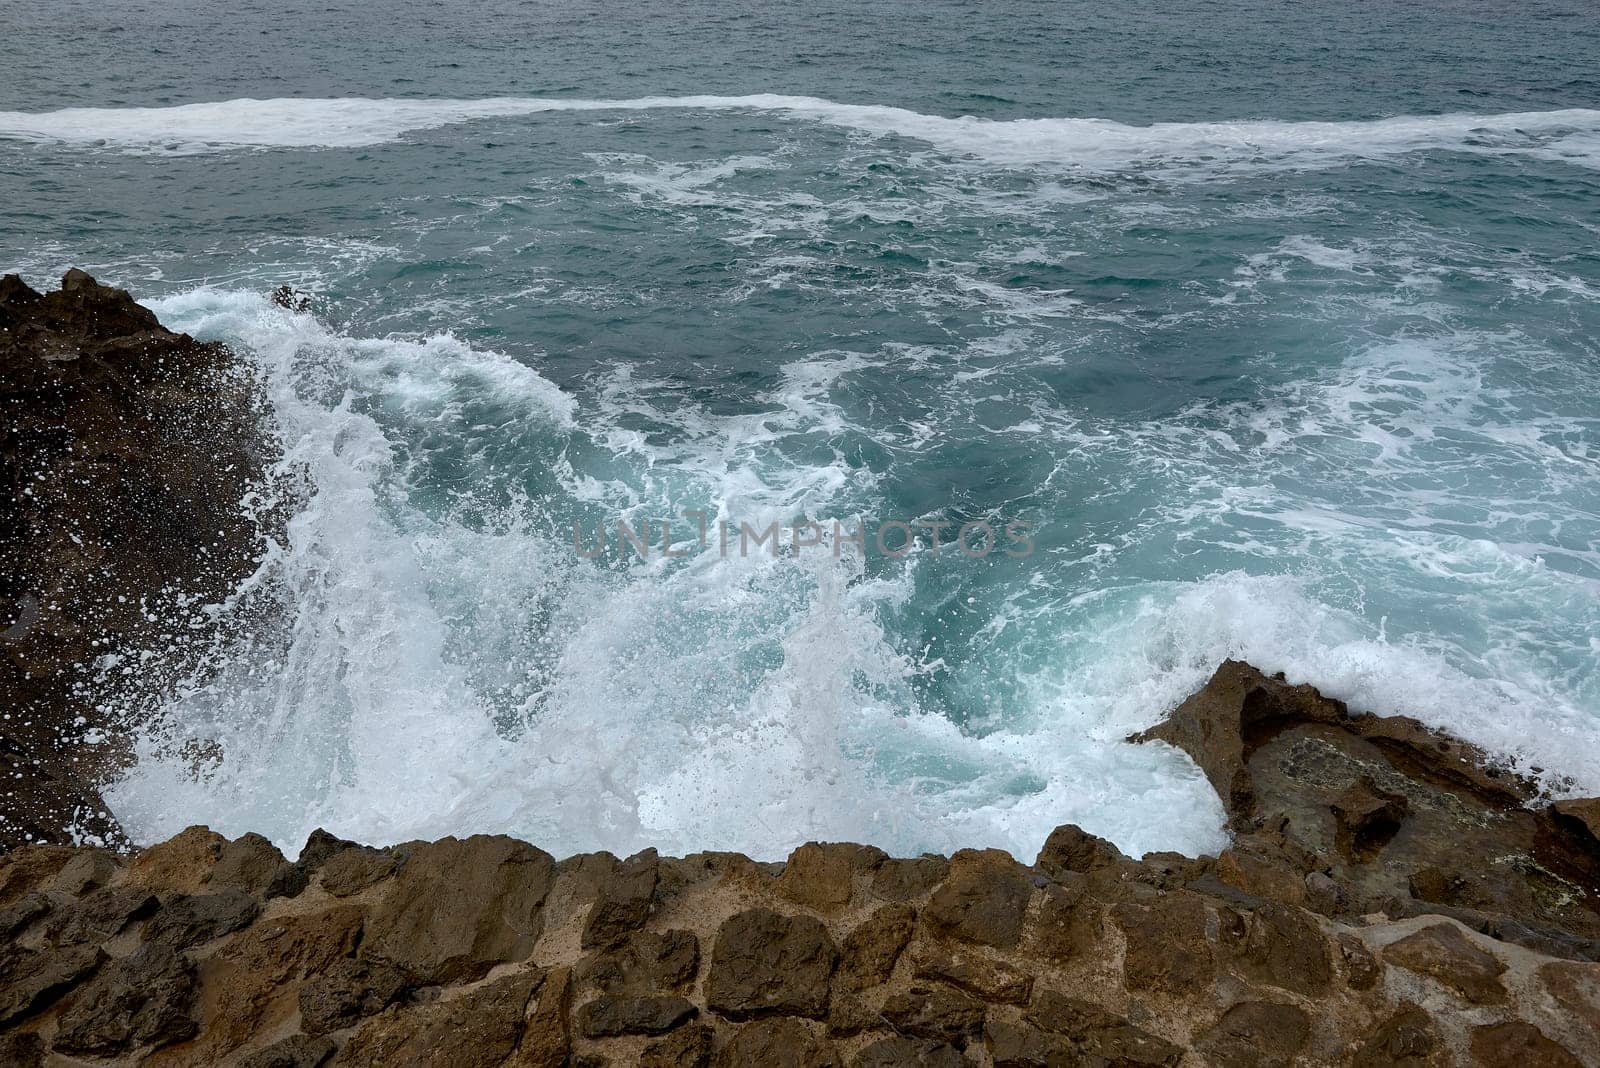 Waves breaking on the shore on a pebble road. water foam, wild waters, texture, ocean, sea, rocks,danger